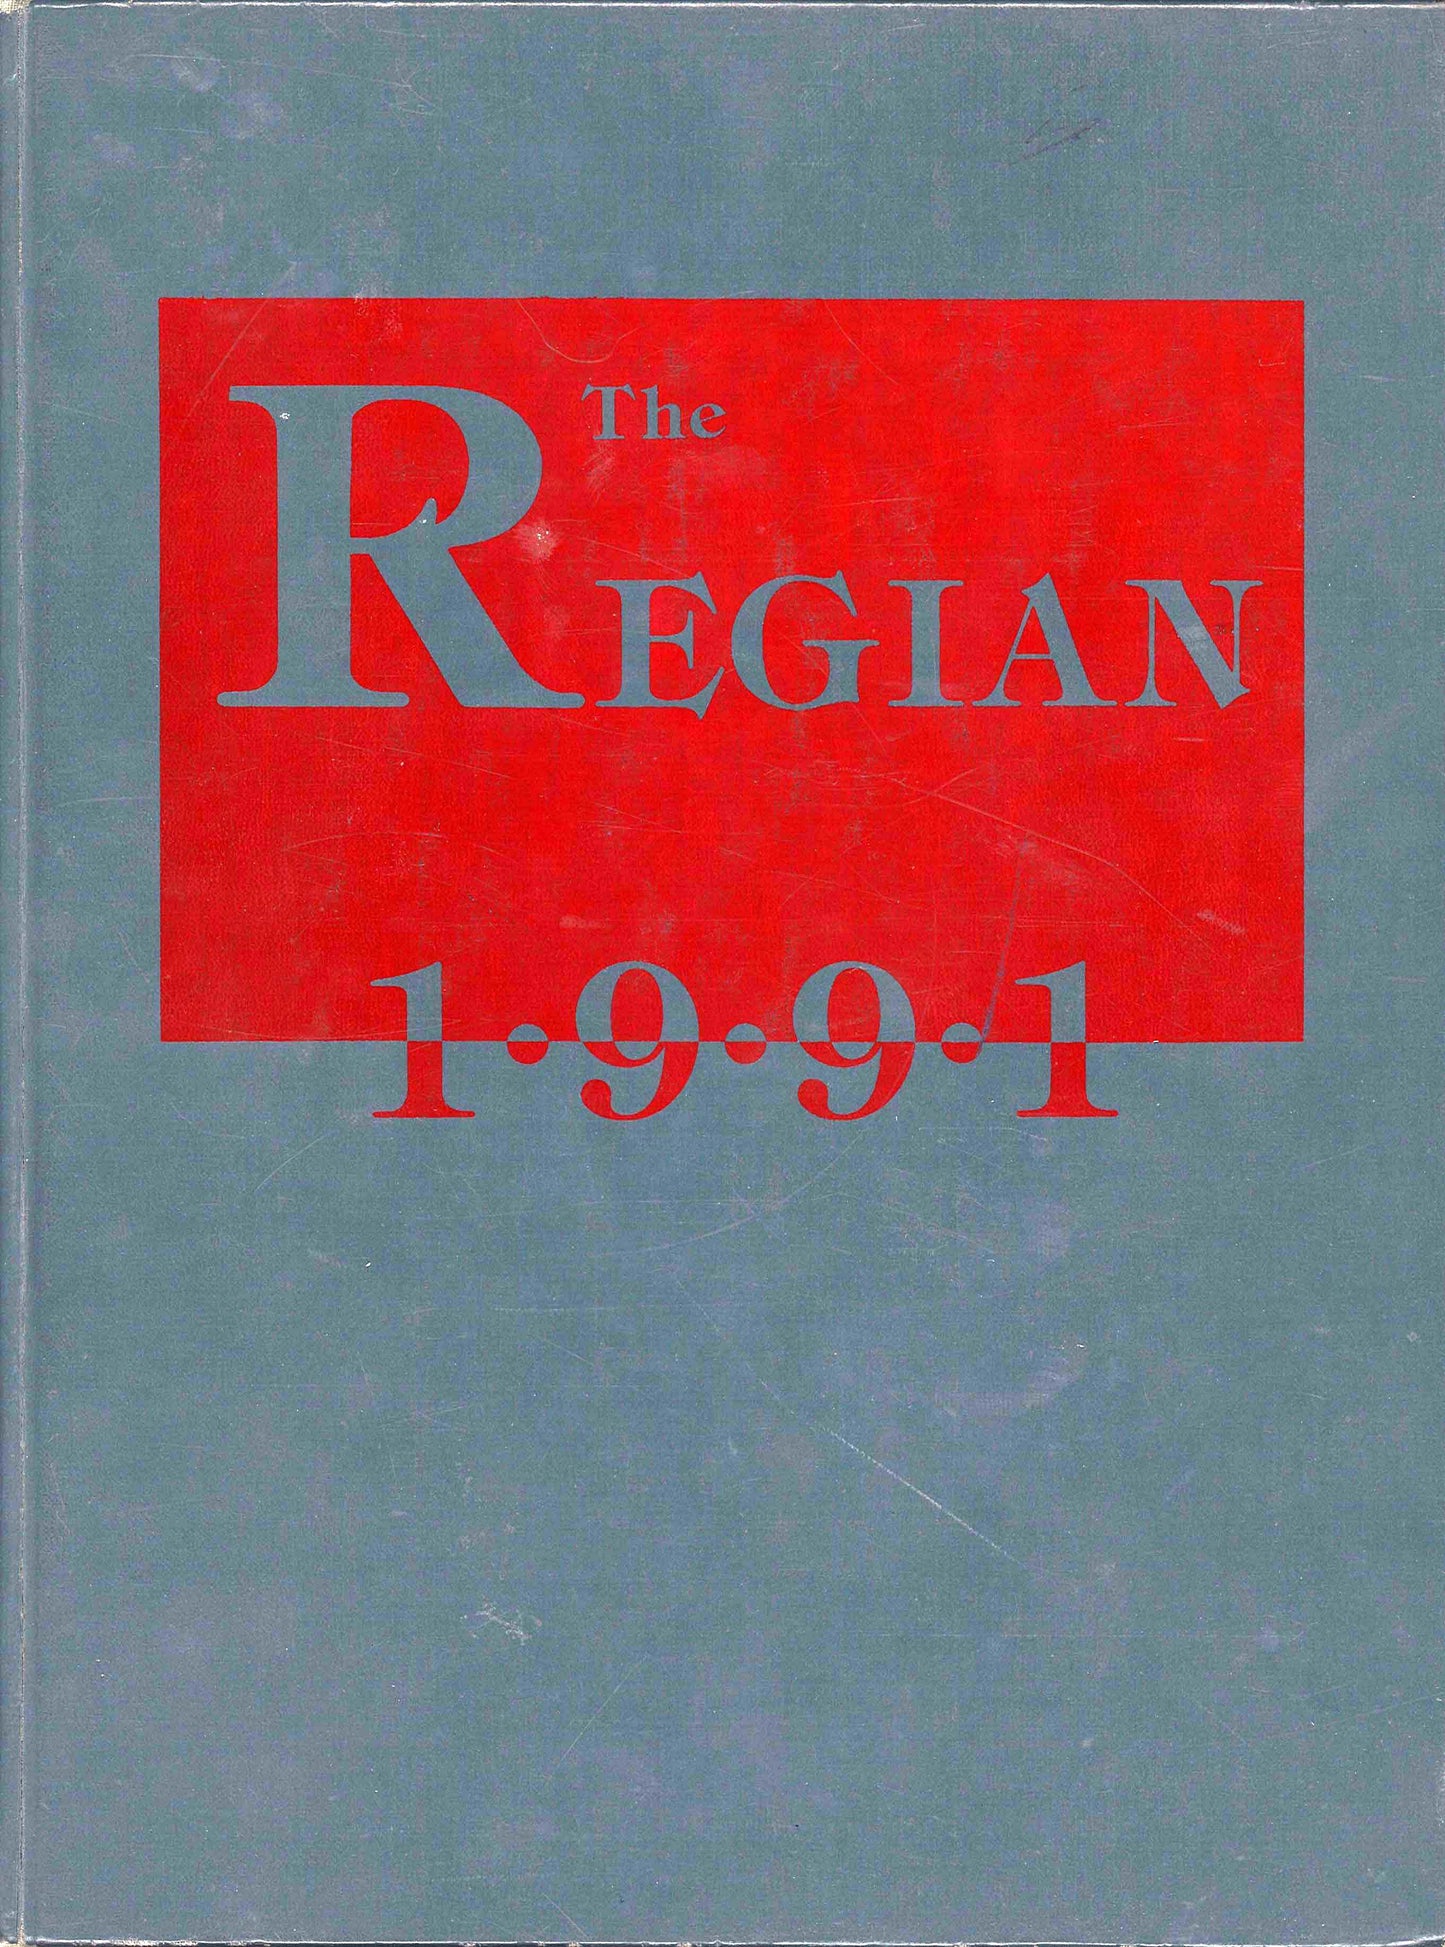 The Regian - 1991